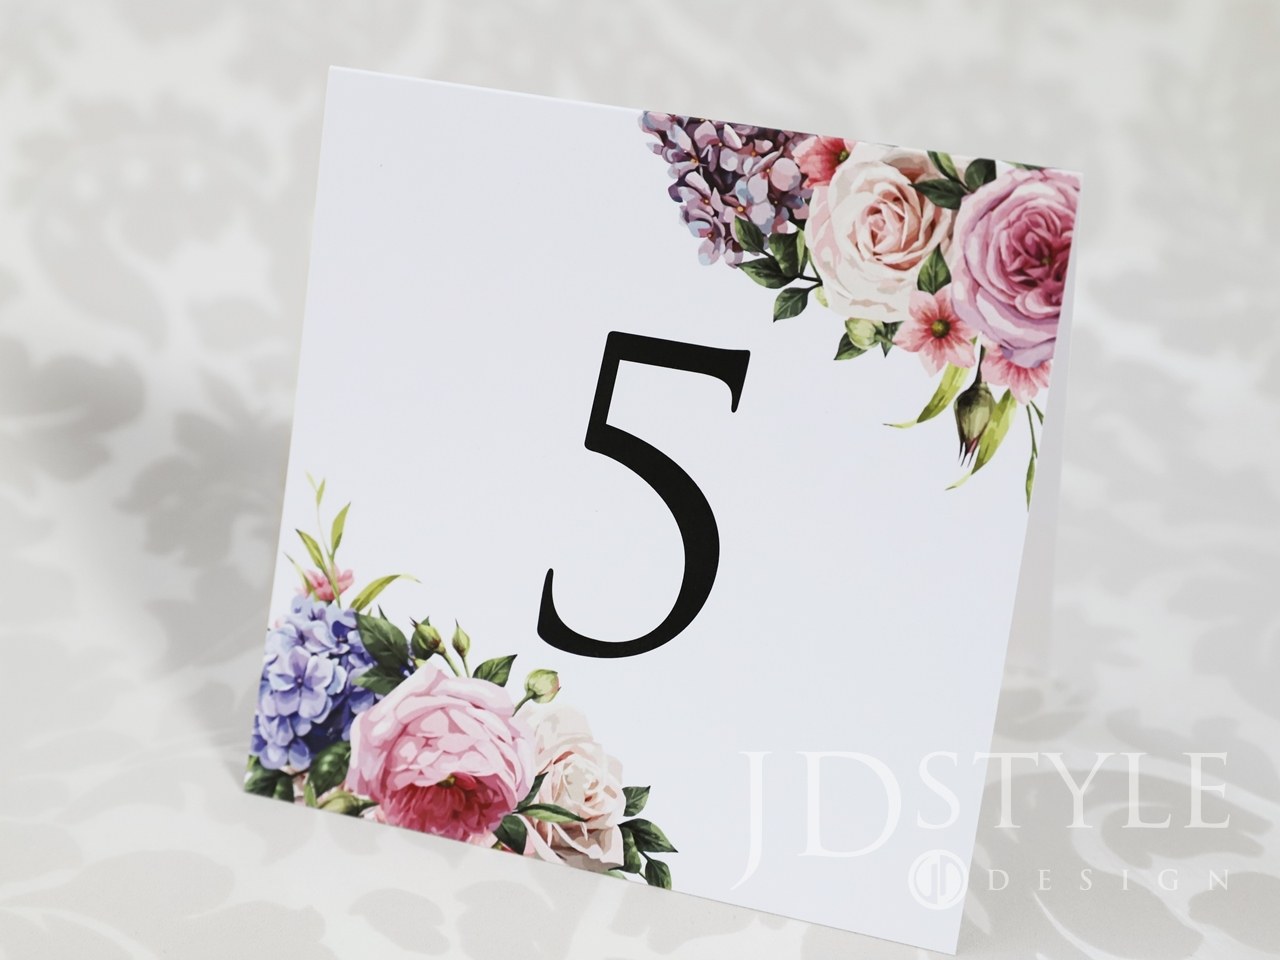 Kwiatowy plan stołów na weselu piwonie, hortensje i róże FL-34-PS